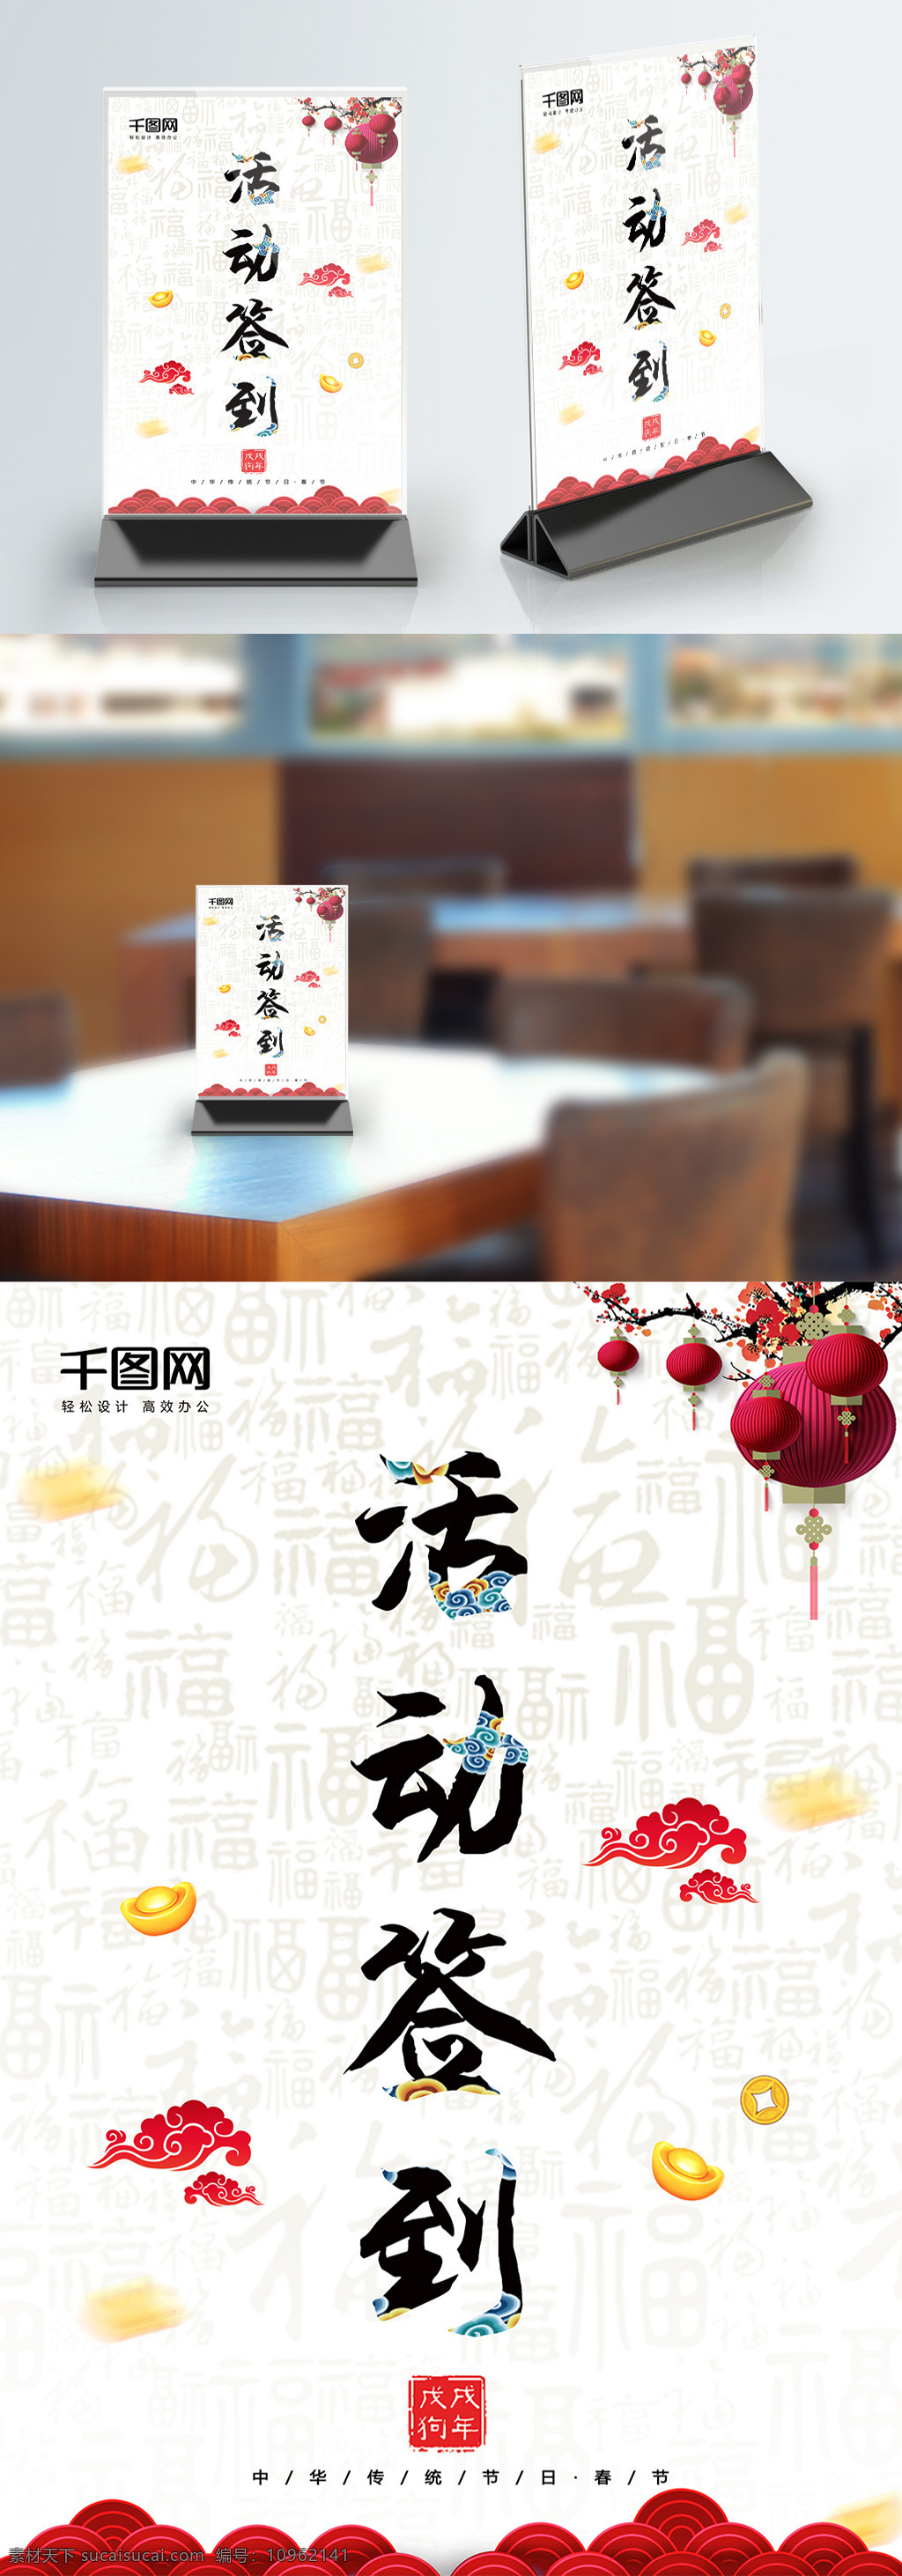 简约 中国 风 活动 签到 桌 卡 模板 新年快乐 签到处 桌卡设计 桌牌设计 台卡 活动签到 签到处桌卡 中国风桌卡